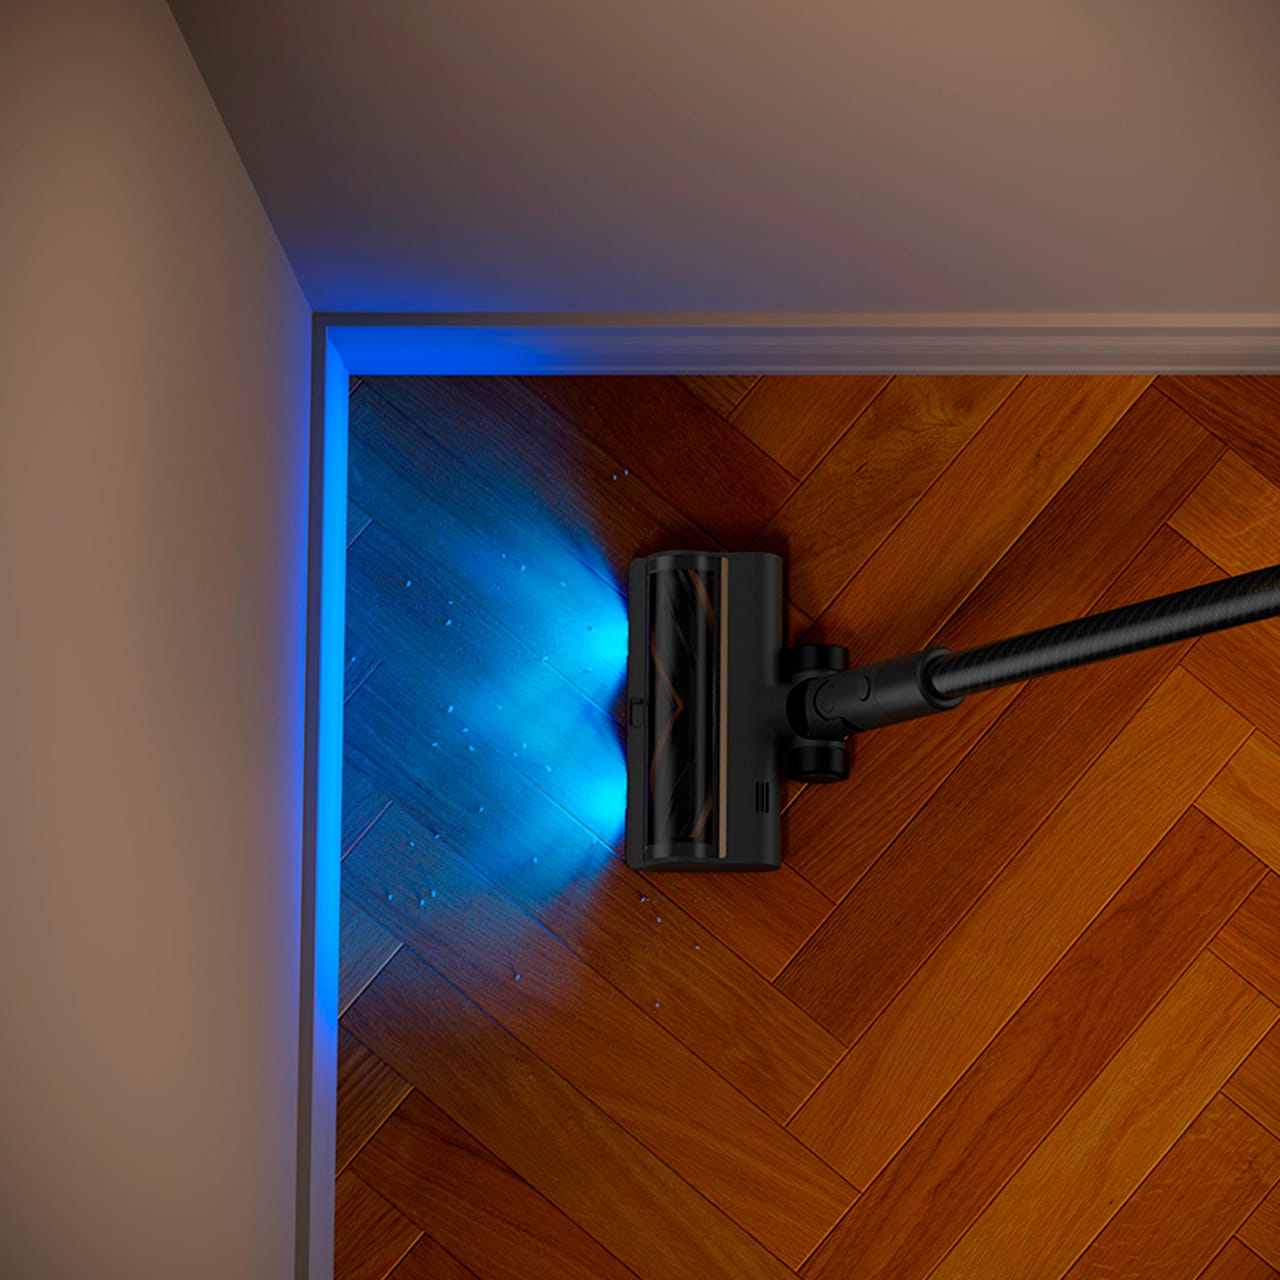 Турбо-щётка вертикального пылесоса Dreame R20 оснащена LED-подсветкой